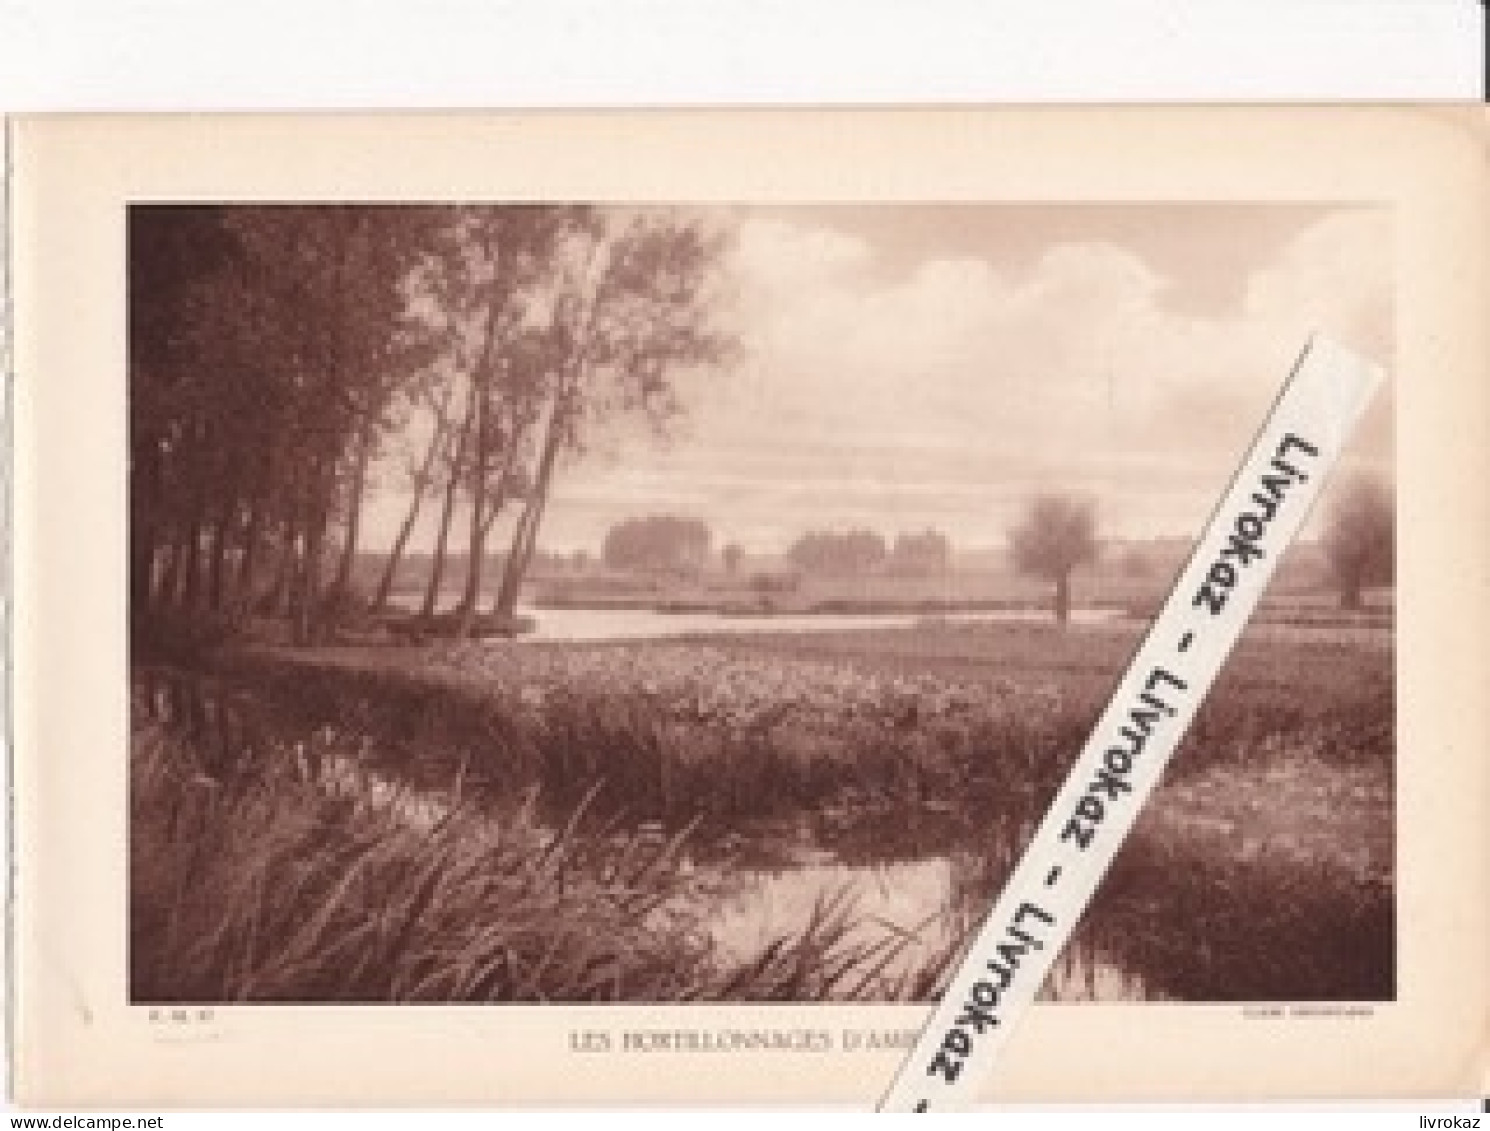 Les Hortillonnages D'Amiens (Somme), Photo Sépia Extraite D'un Livre Paru En 1933 - Unclassified